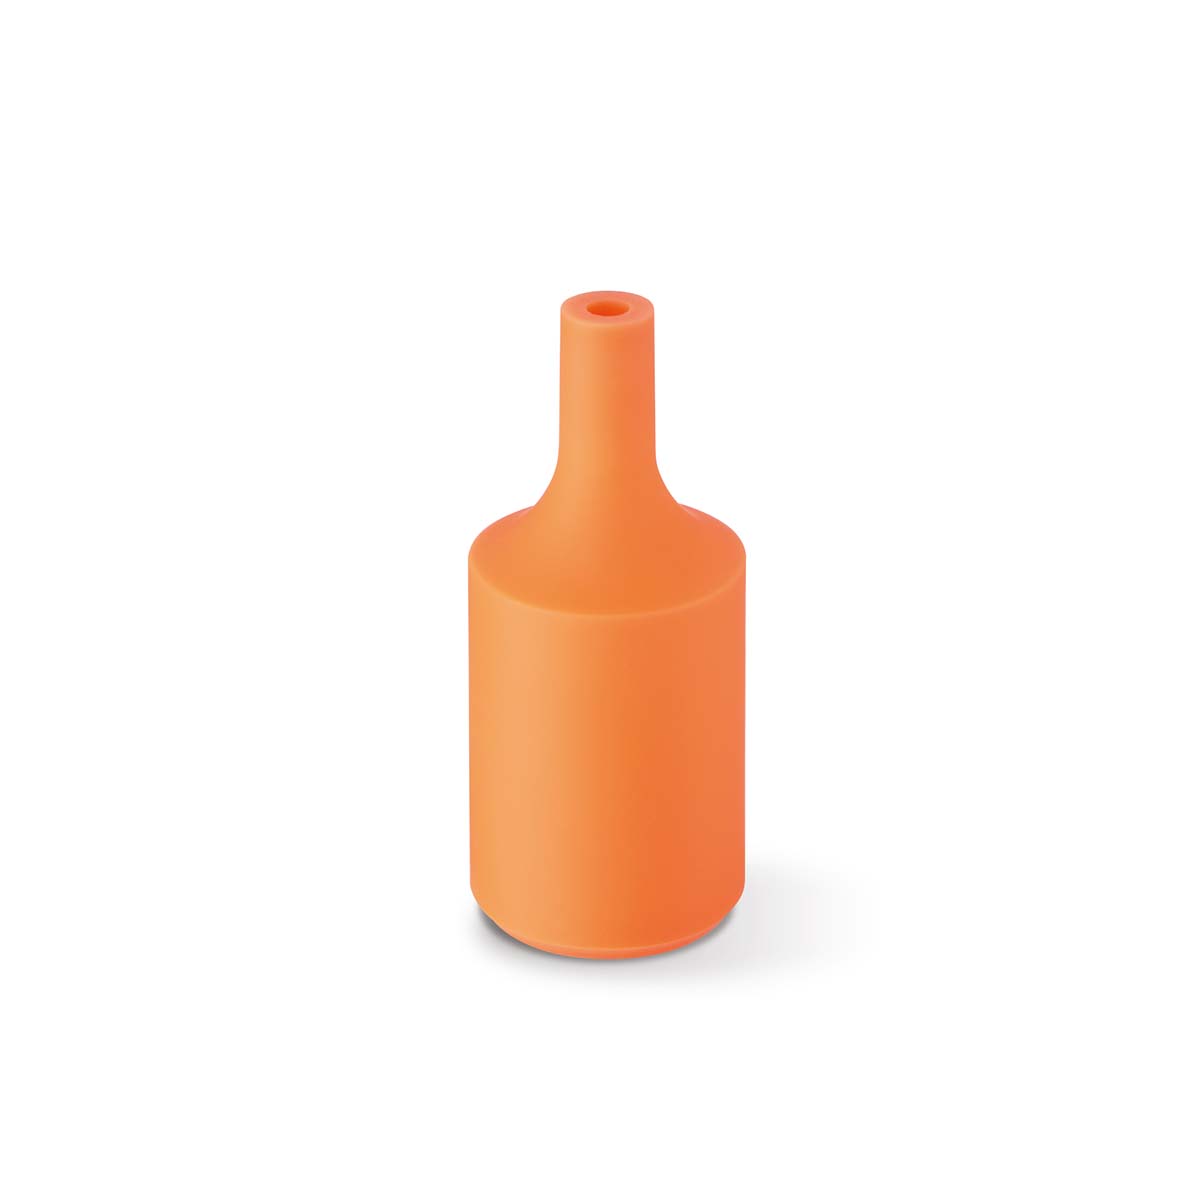 Tangla lighting - TLLH024OG - lamp holder silicon - E27 - bottle - orange